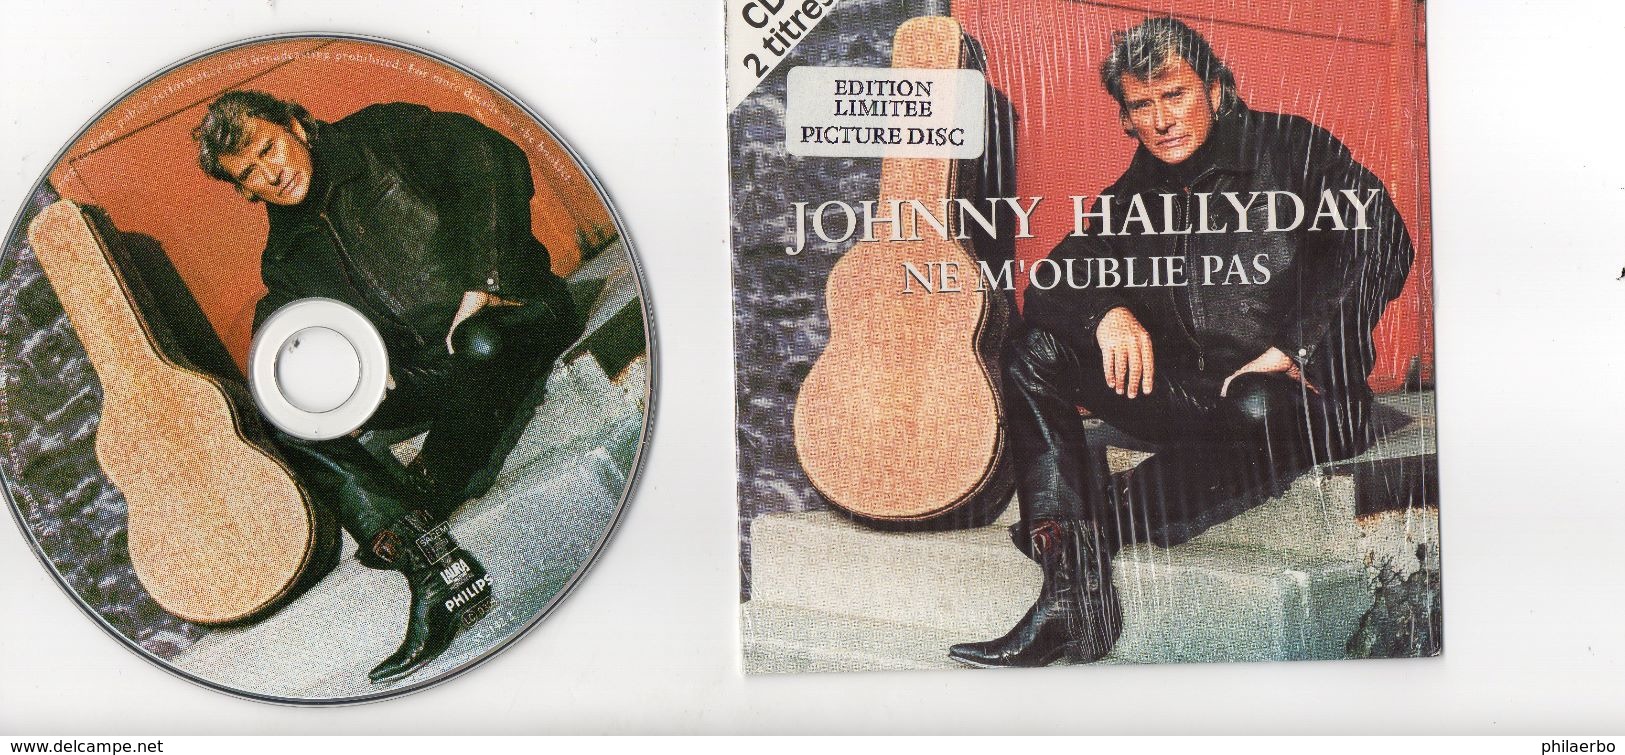 JOHNNY HALLIDAY  1995  " NE M'OUBLIE PAS "   PICTURE DISC  SOUS BLISTER - Ediciones Limitadas